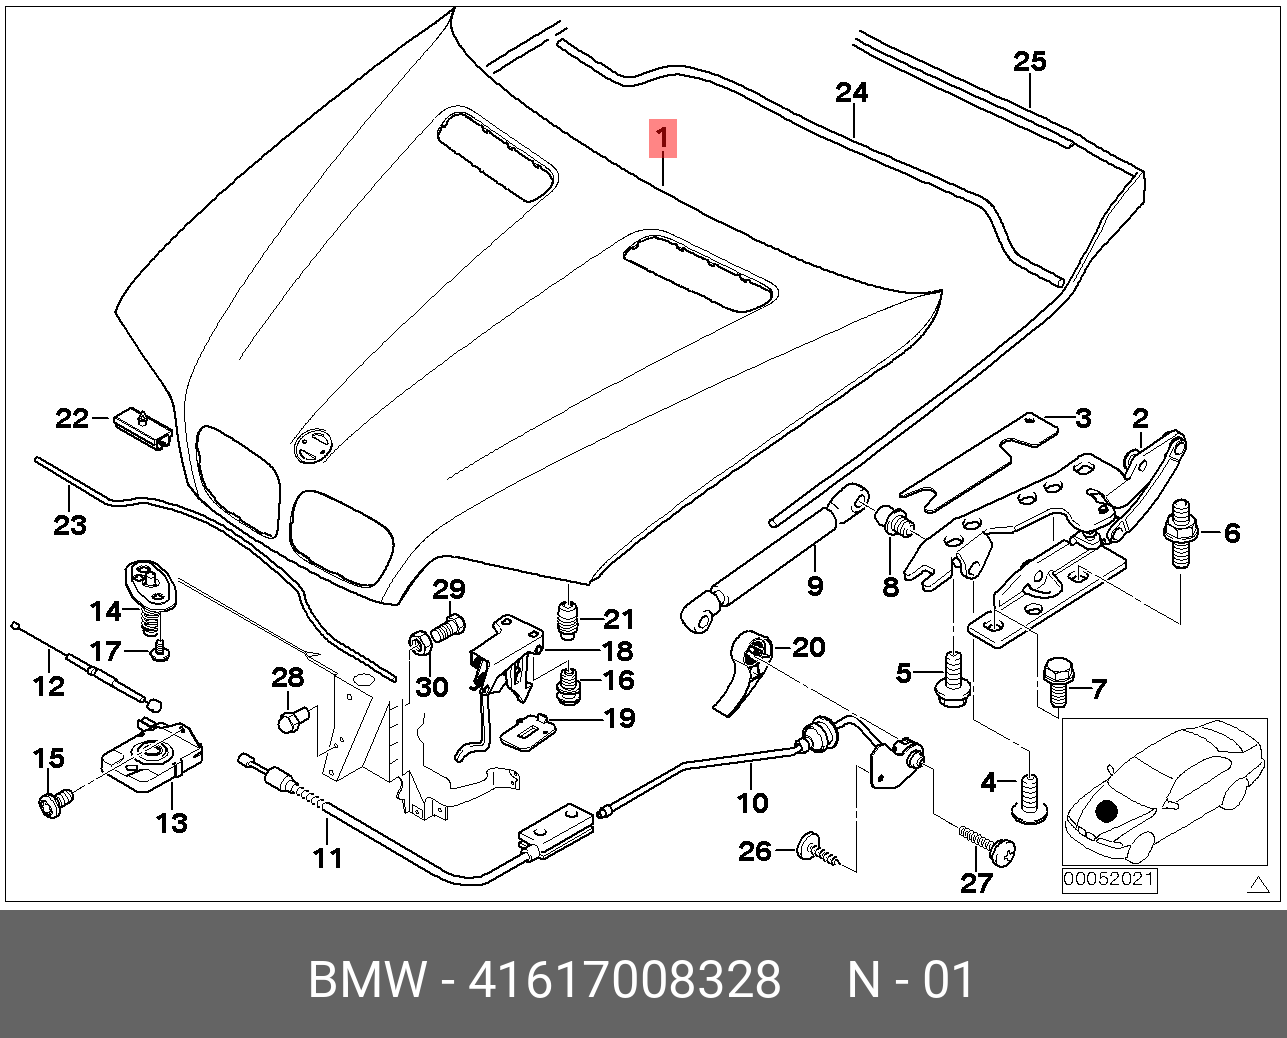 Bmw x5 капот. 51238402615 Трос привода капота BMW x5 53. Тросик капота БМВ х5 е53. Замок капота БМВ х5 е53. BMW x5 e53 капот.